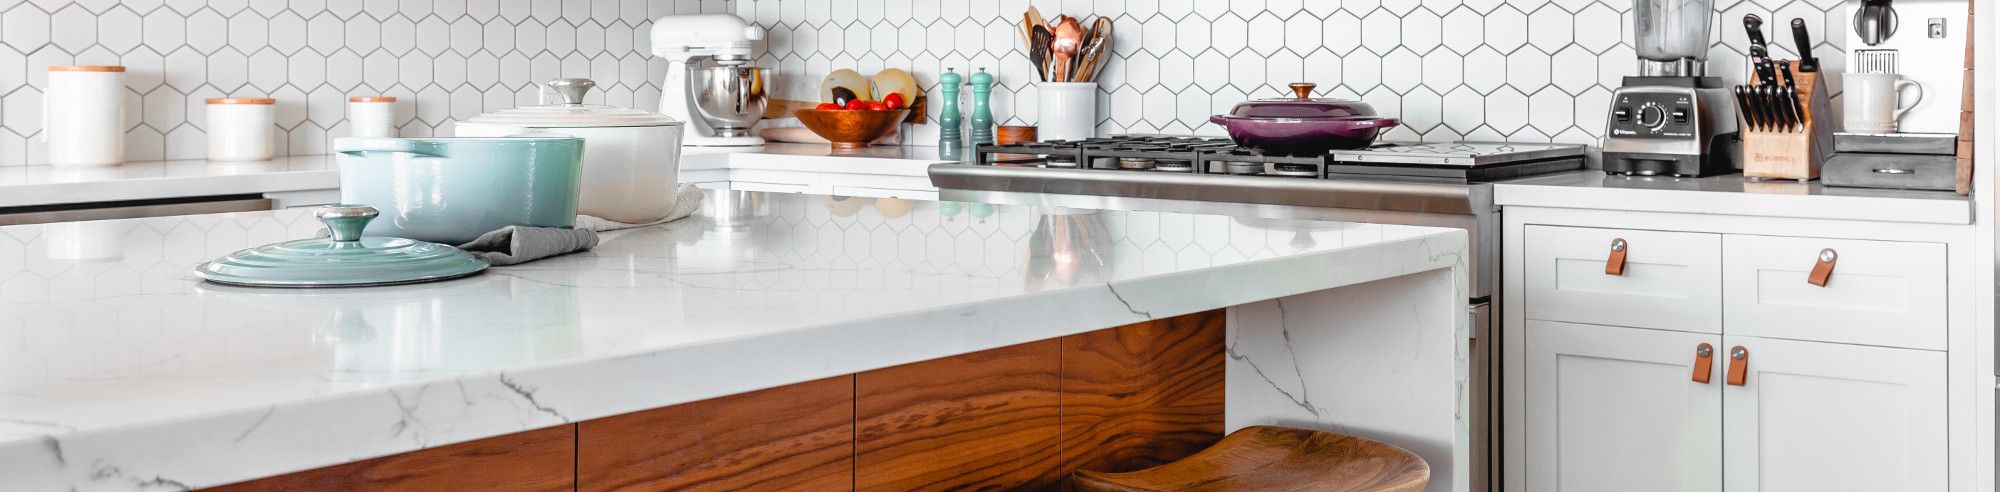 Moderne Küche in weiß mit Materialmix Olivenholz, Marmor und Edelstahl